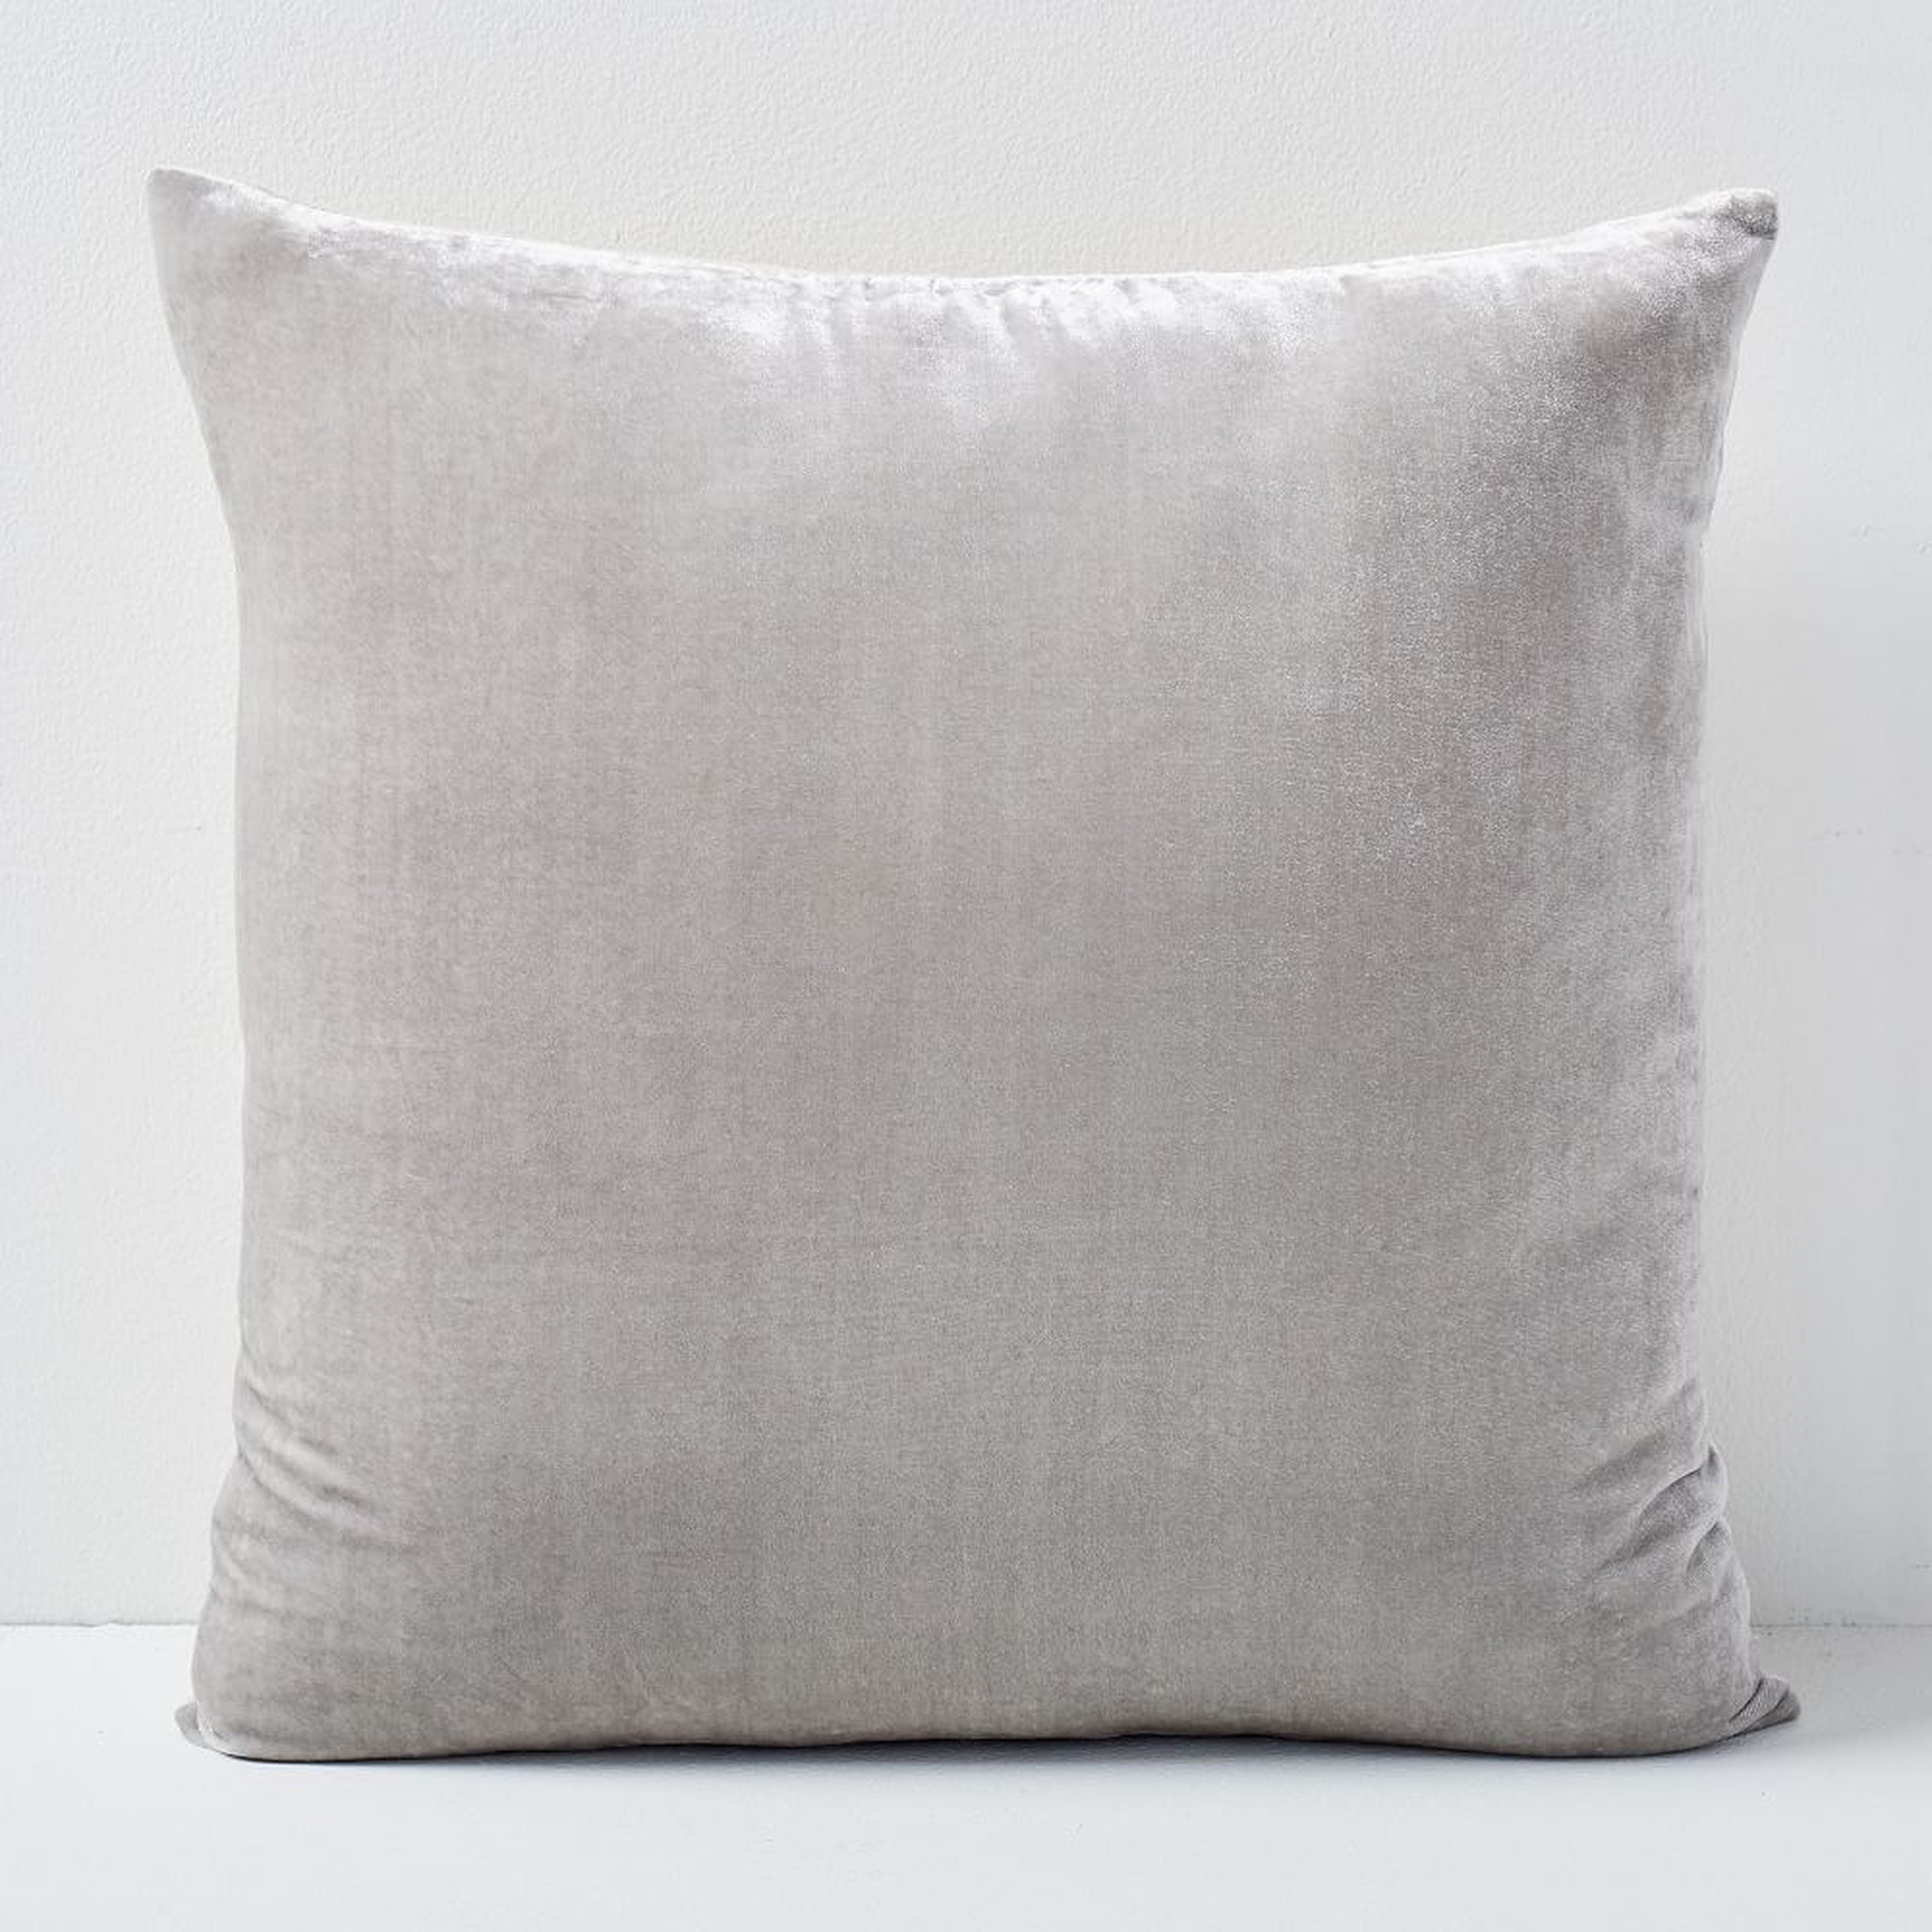 Lush Velvet Pillow Cover, 20"x20", Pearl Gray - West Elm